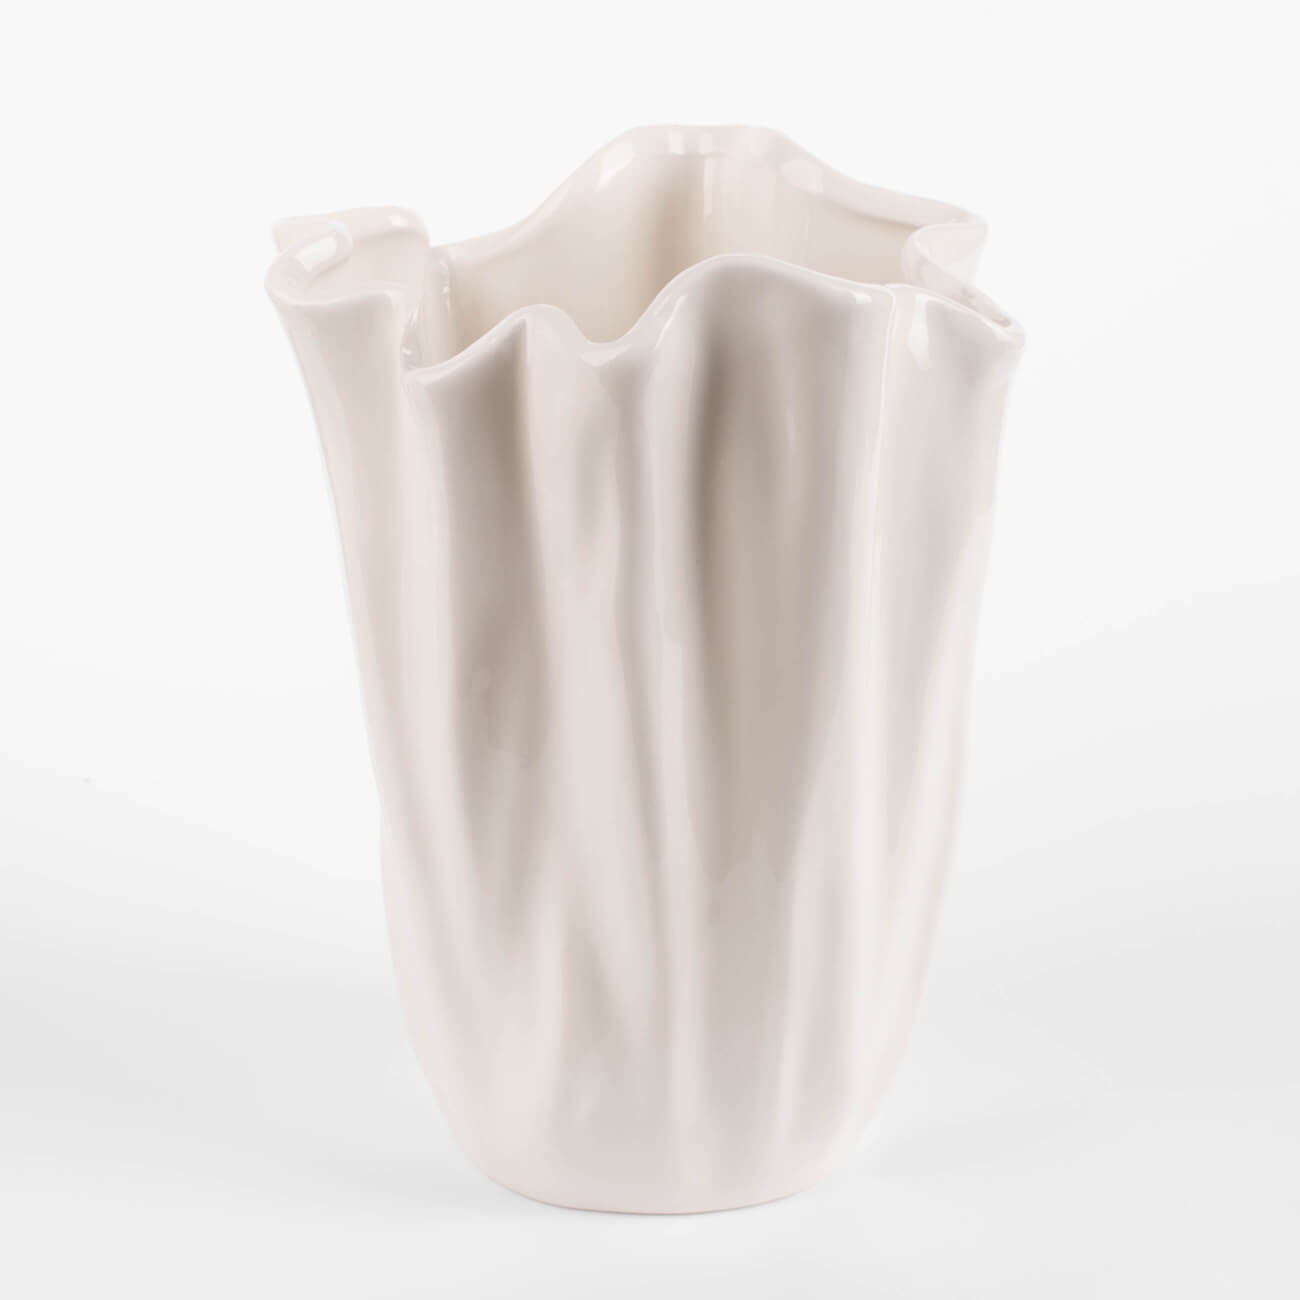 ваза для ов 24 см керамика молочная мятый эффект crumple Ваза для цветов, 24 см, керамика, молочная, Мятый эффект, Crumple